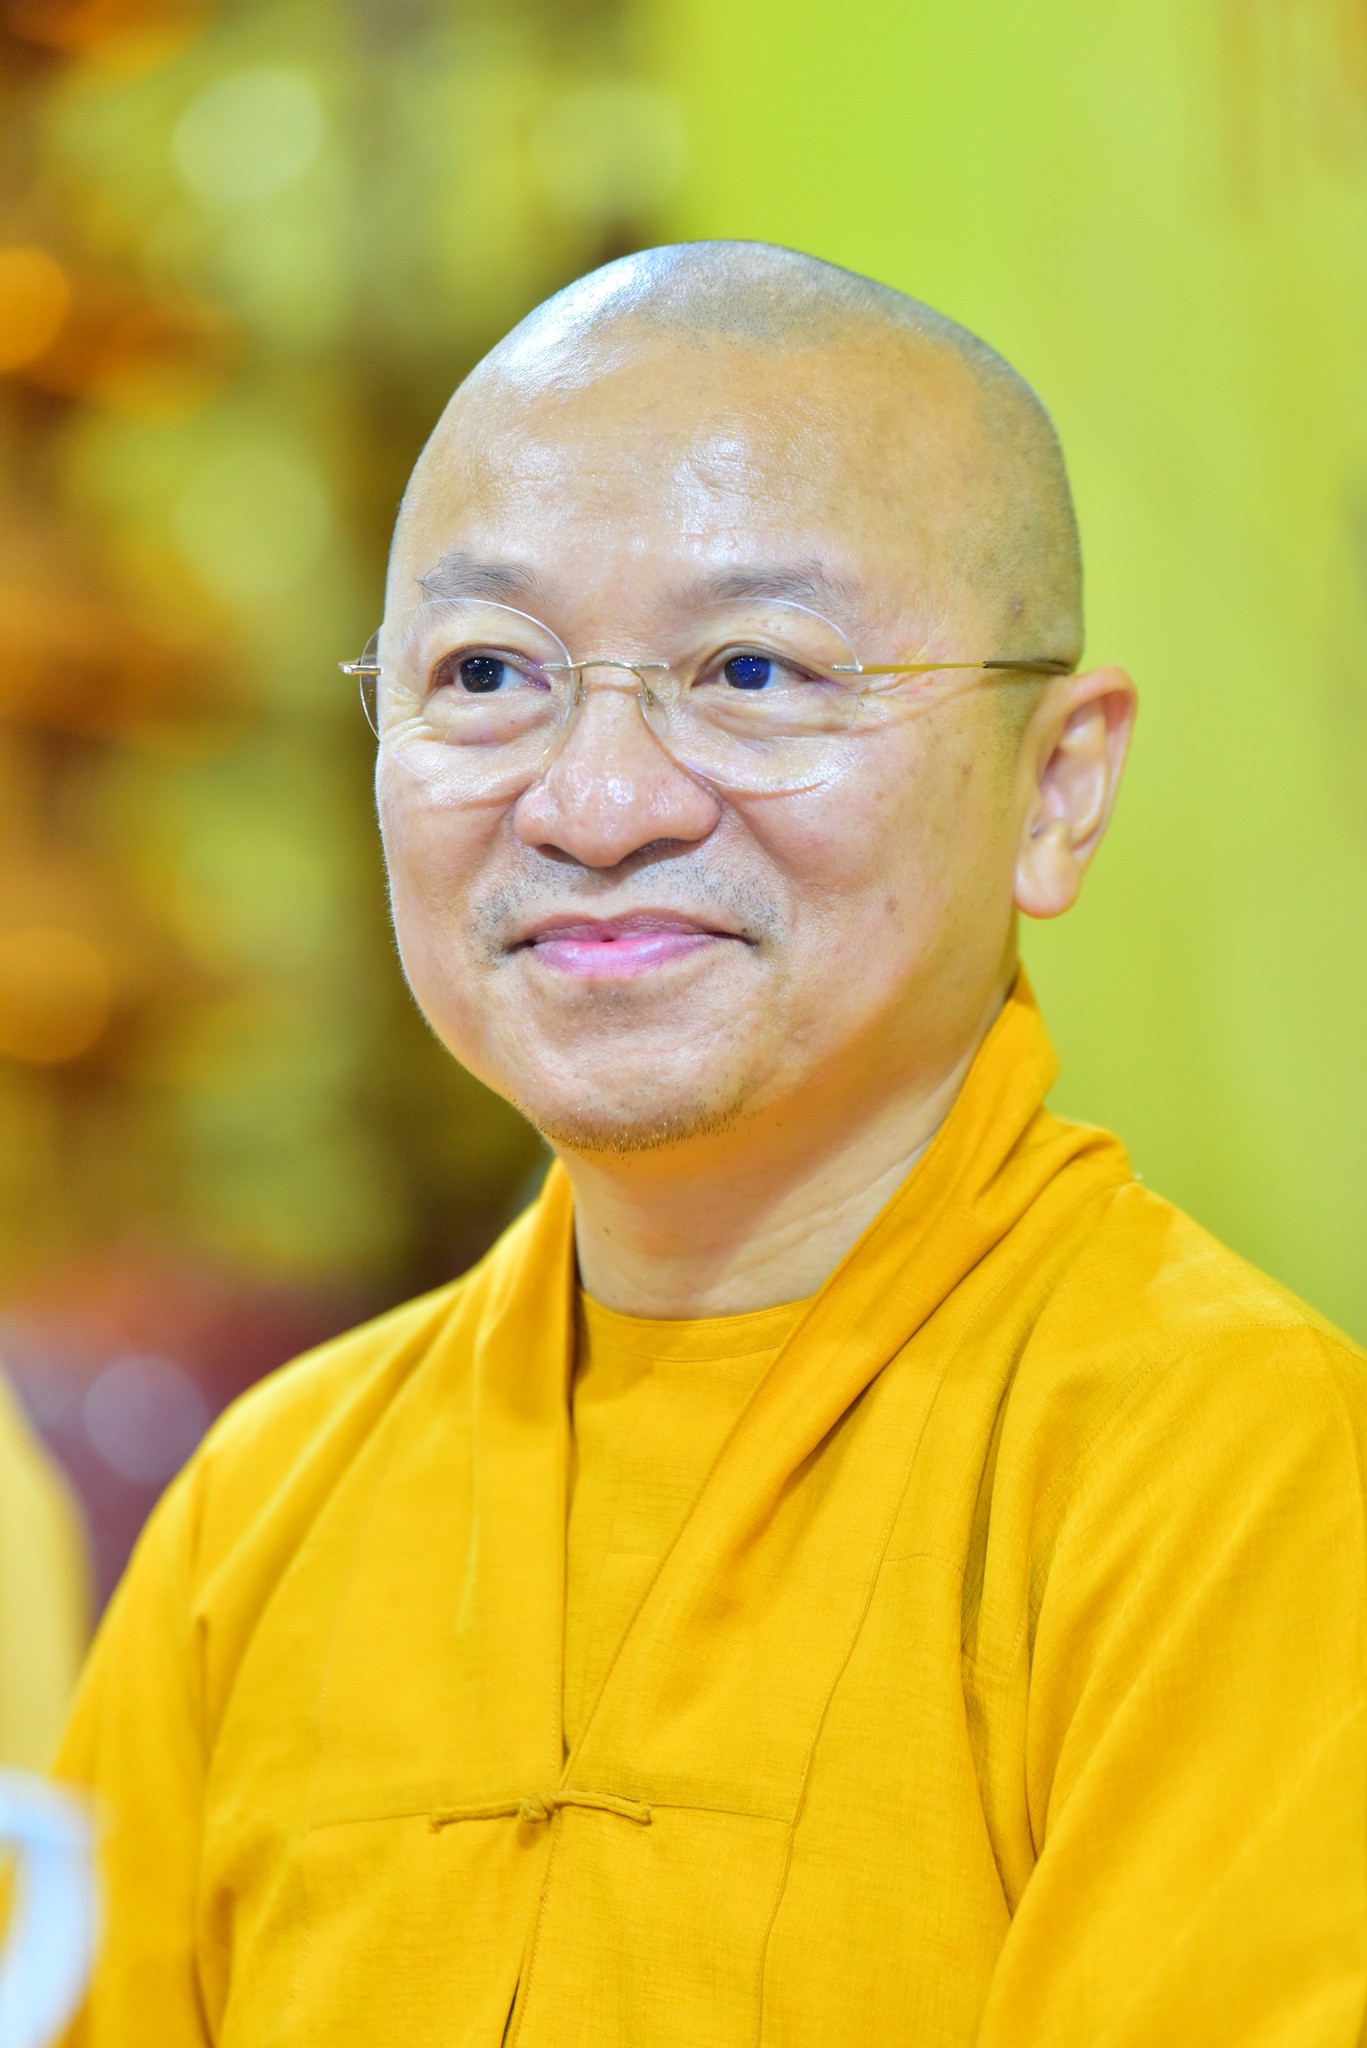 Khuyến khích Phật tử trẻ chung tay bảo vệ môi trường